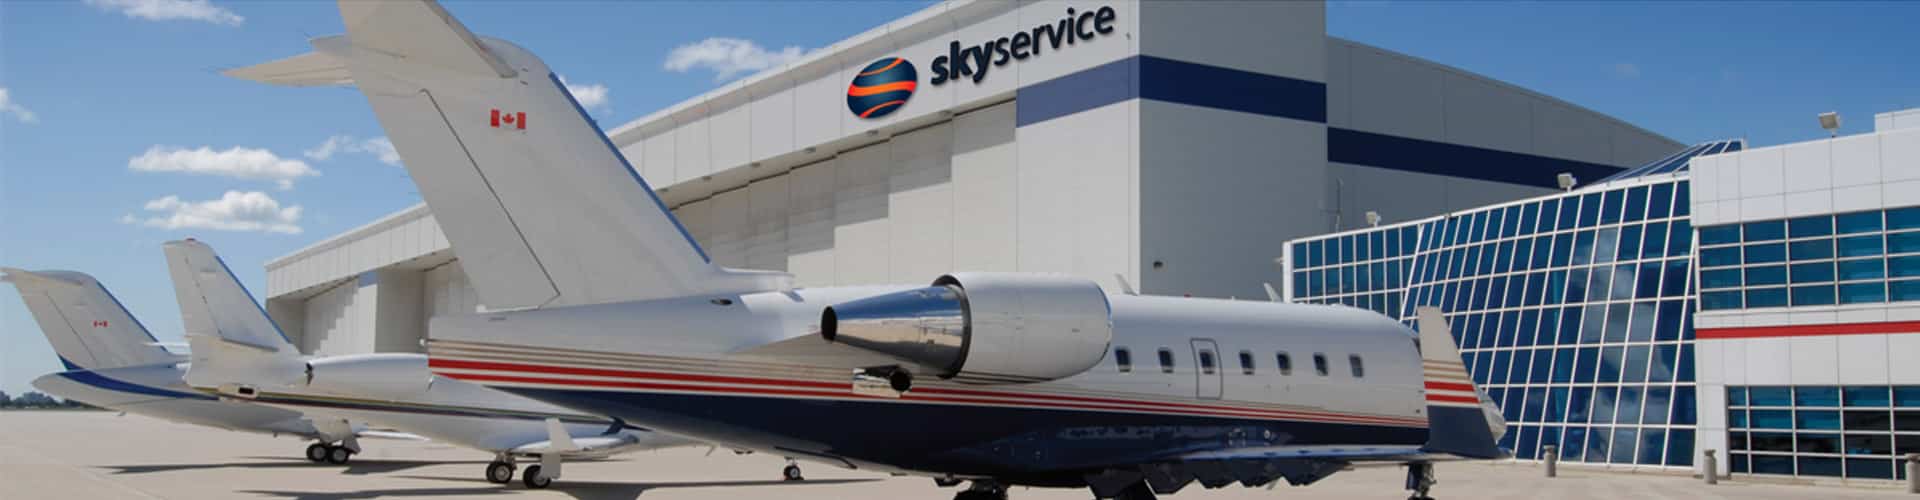 Skyservice FBO - Toronto hangar and plane